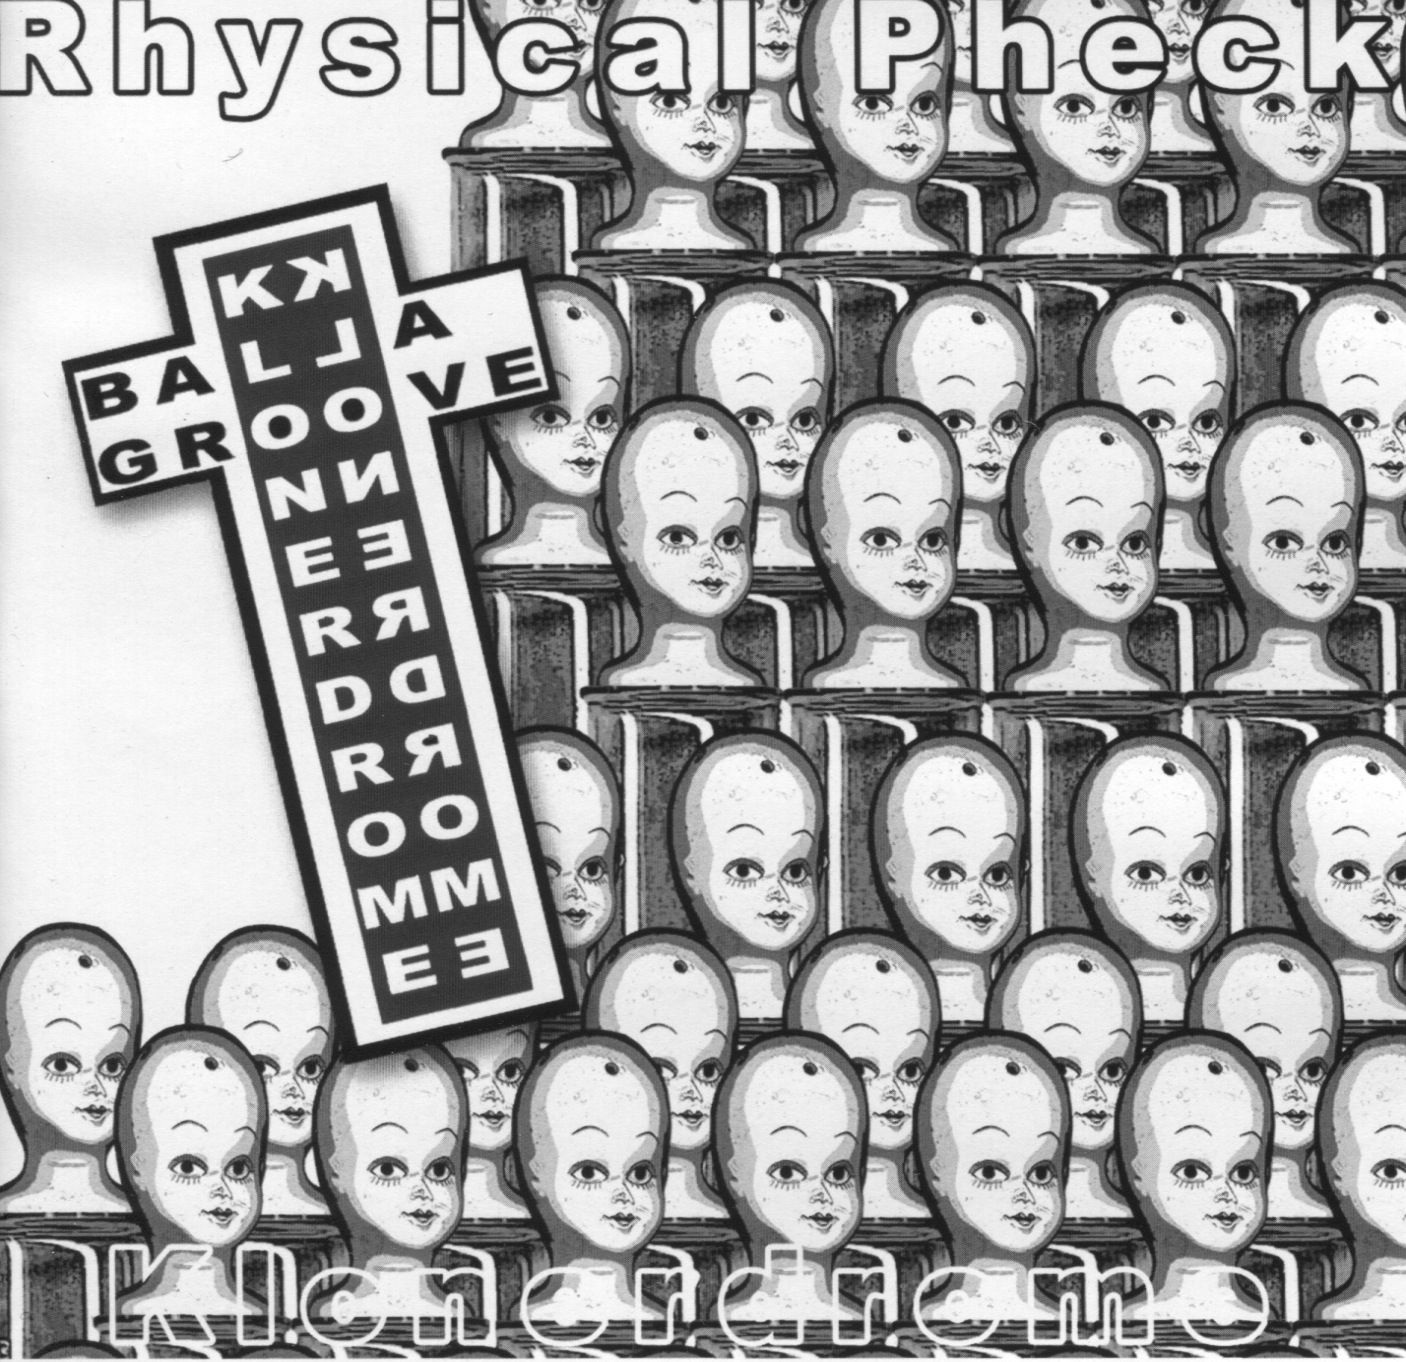 Rhysical Pheck – Klonerdrome cover artwork